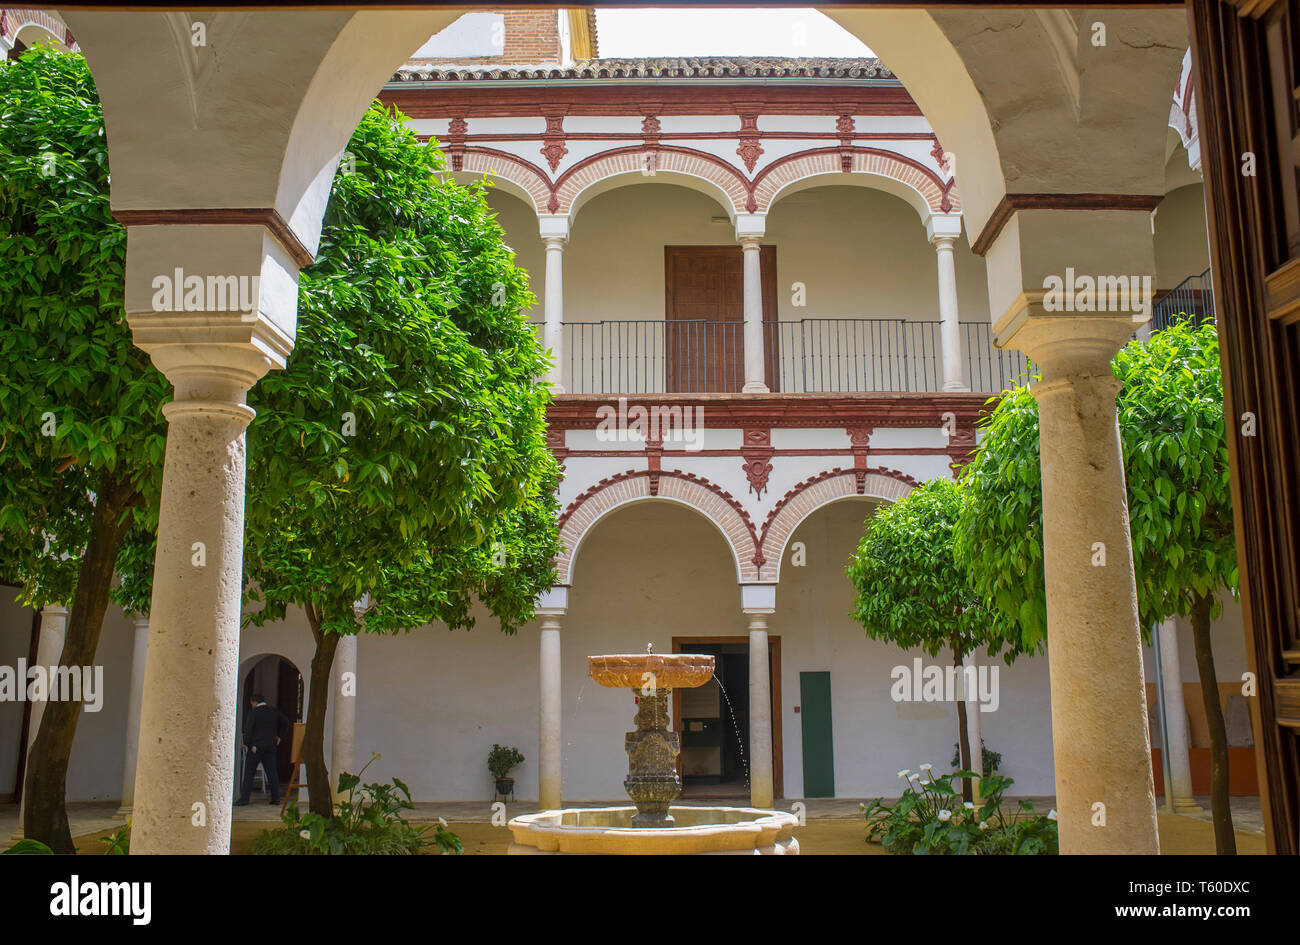 Ecija, Espagne - avril 21th, 2019 : Palais de Benameji, datant du 18ème siècle, Écija, Espagne Banque D'Images